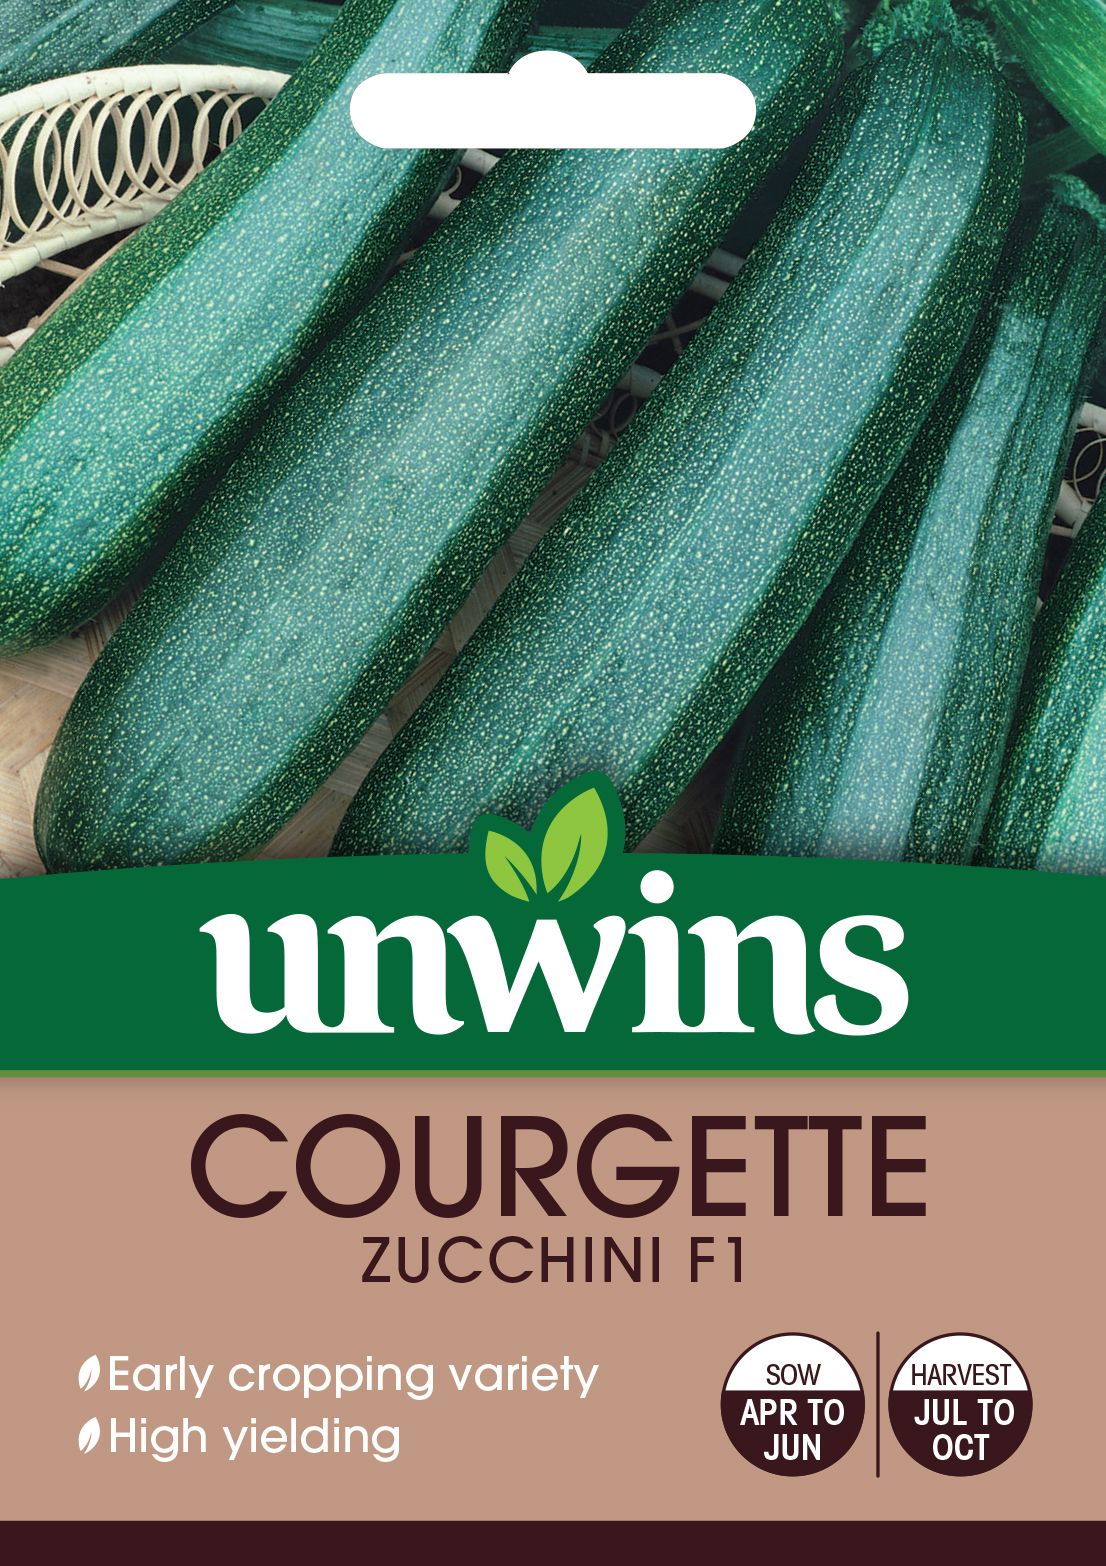 Courgette Zucchini F1